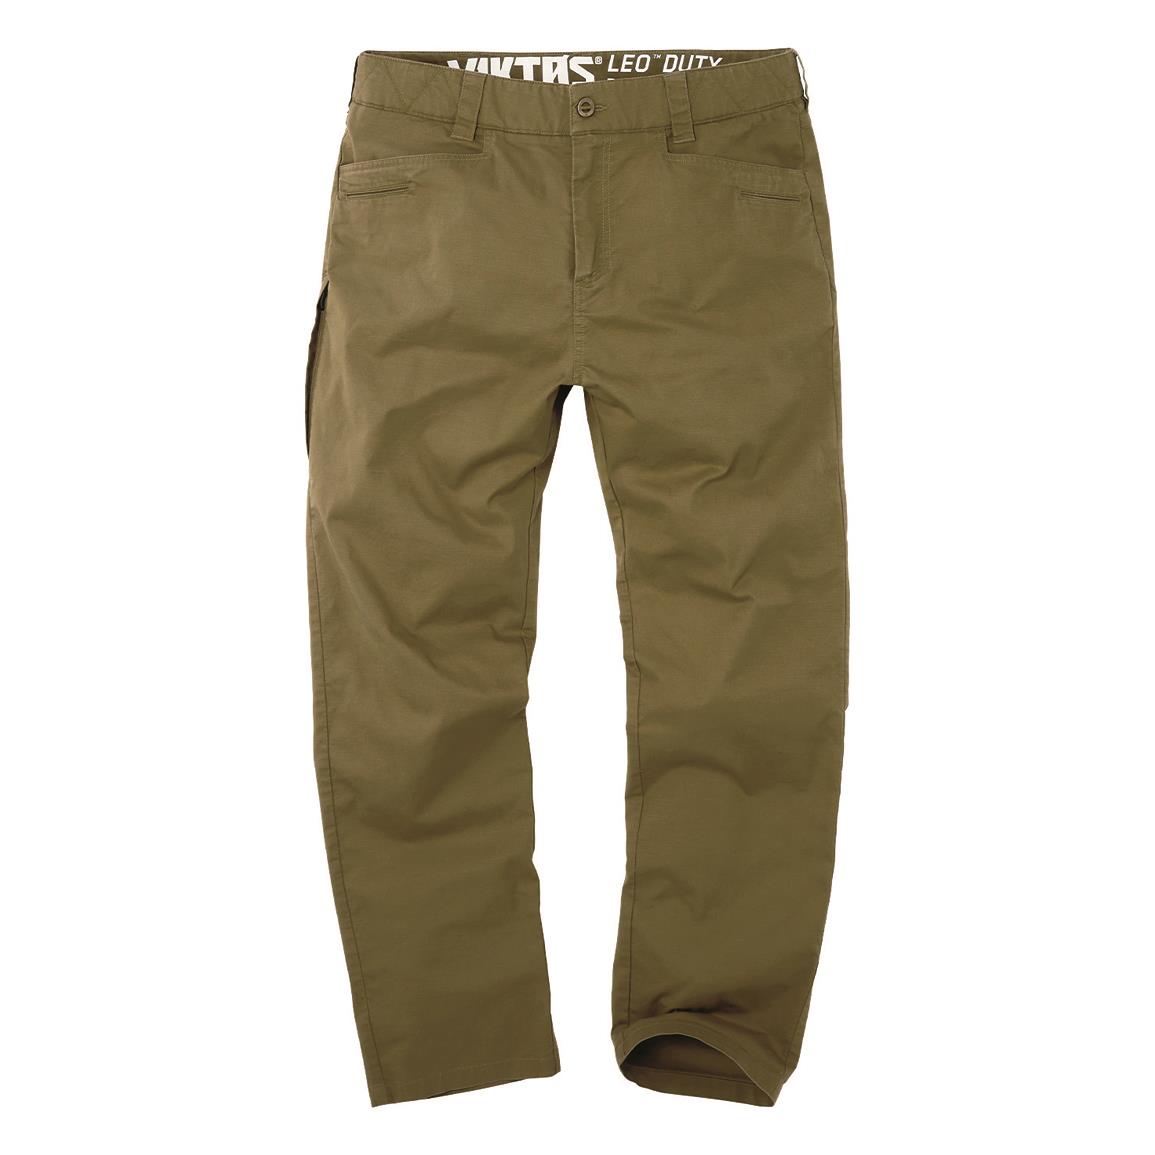 Viktos Men's LEO Duty Pants, Ranger Green